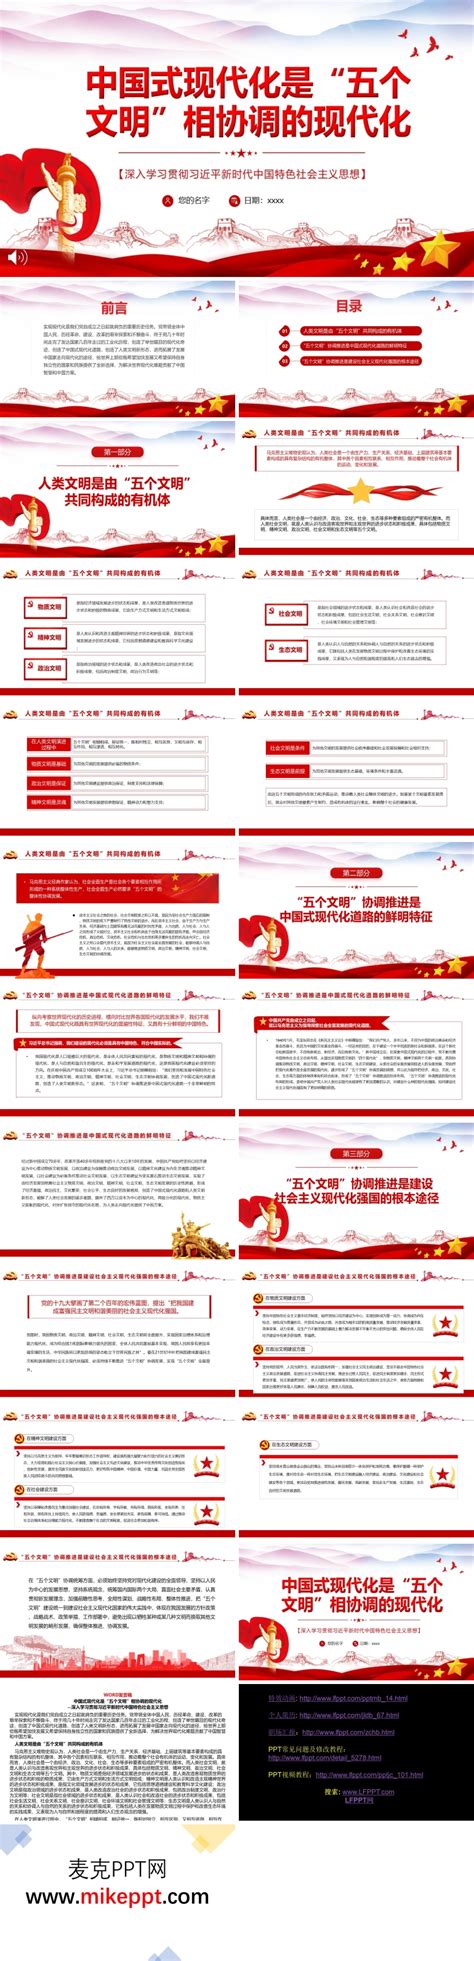 中国式现代化是“五个文明”相协调的现代化PPT党课课件-麦克PPT网